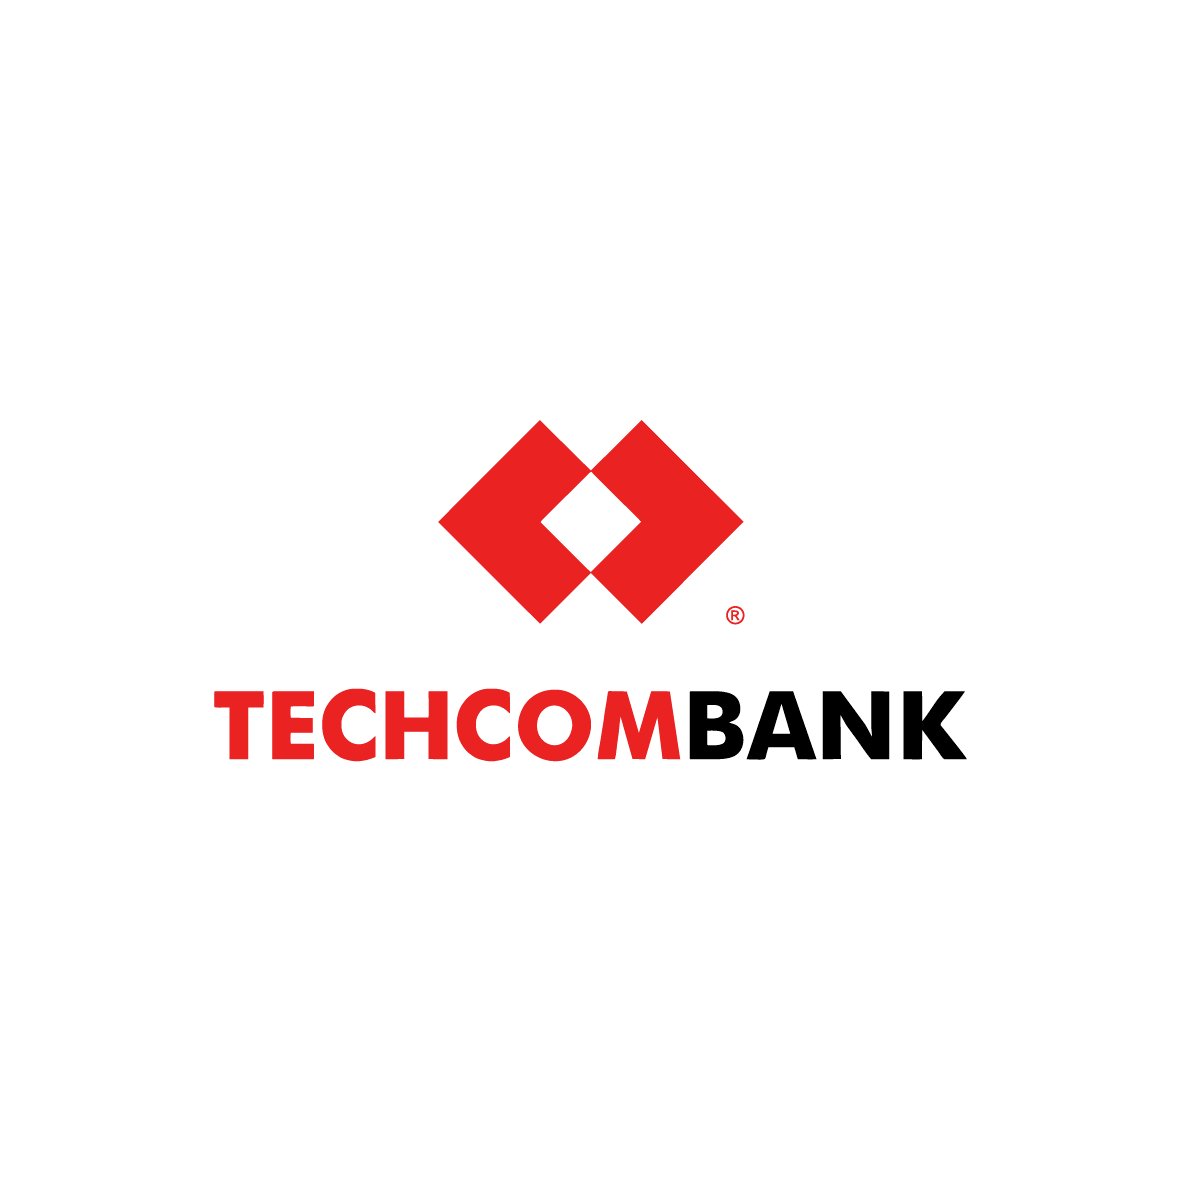 100+ mẫu logo techcombank đẹp và chuyên nghiệp để thể hiện thương hiệu của bạn